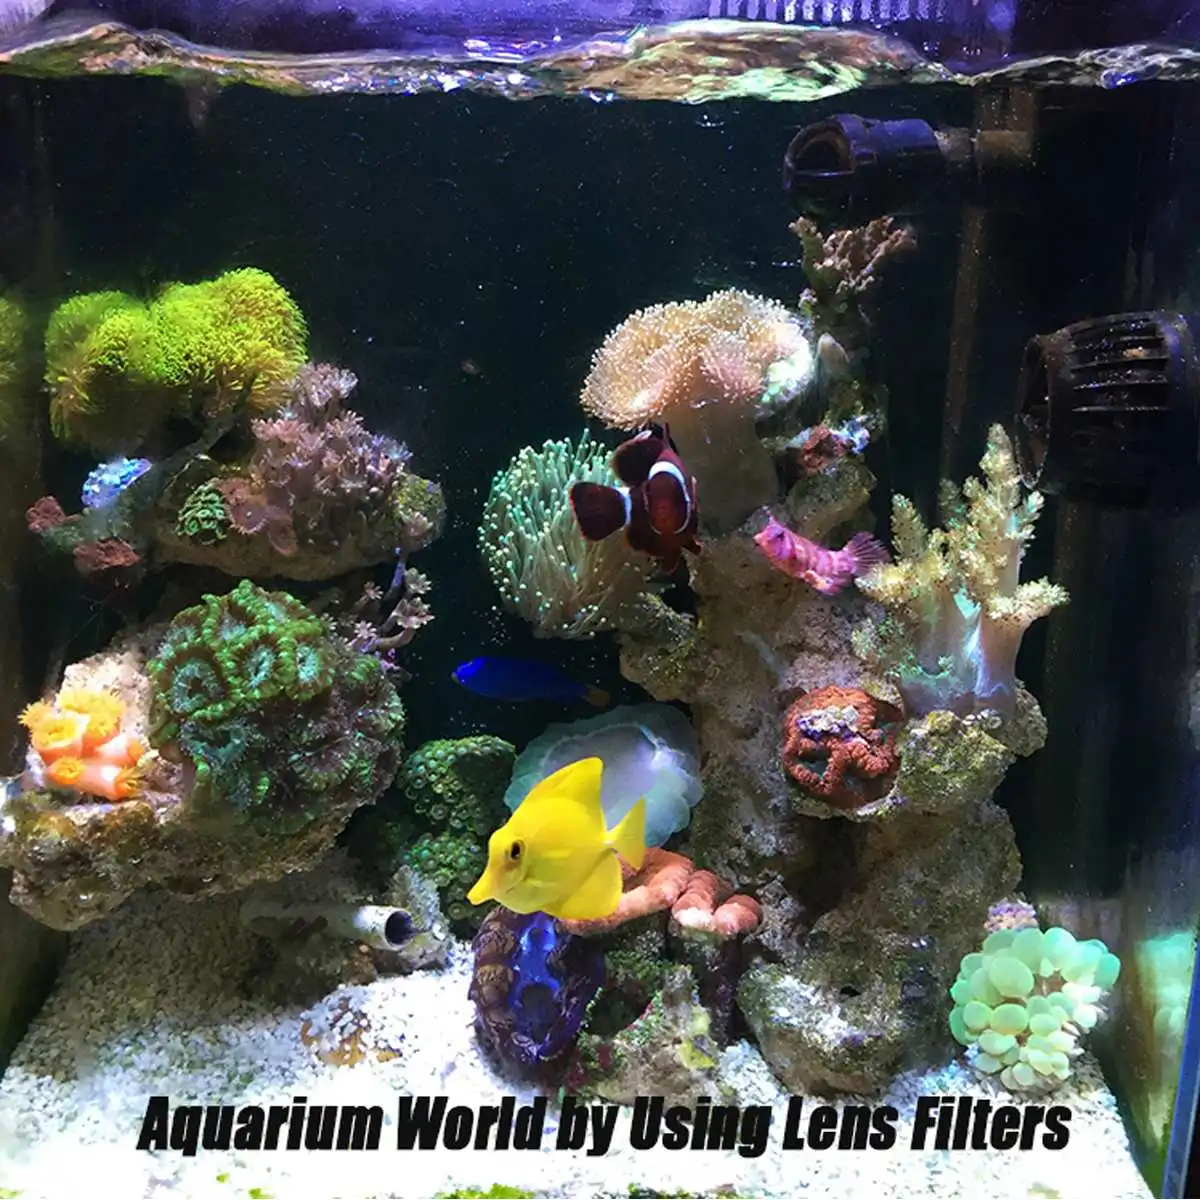 Черный аквариум Коралловый риф магический Объектив телефон камера Фильтры объектив+ 1 макро объектив рыба водный Террариум аксессуары